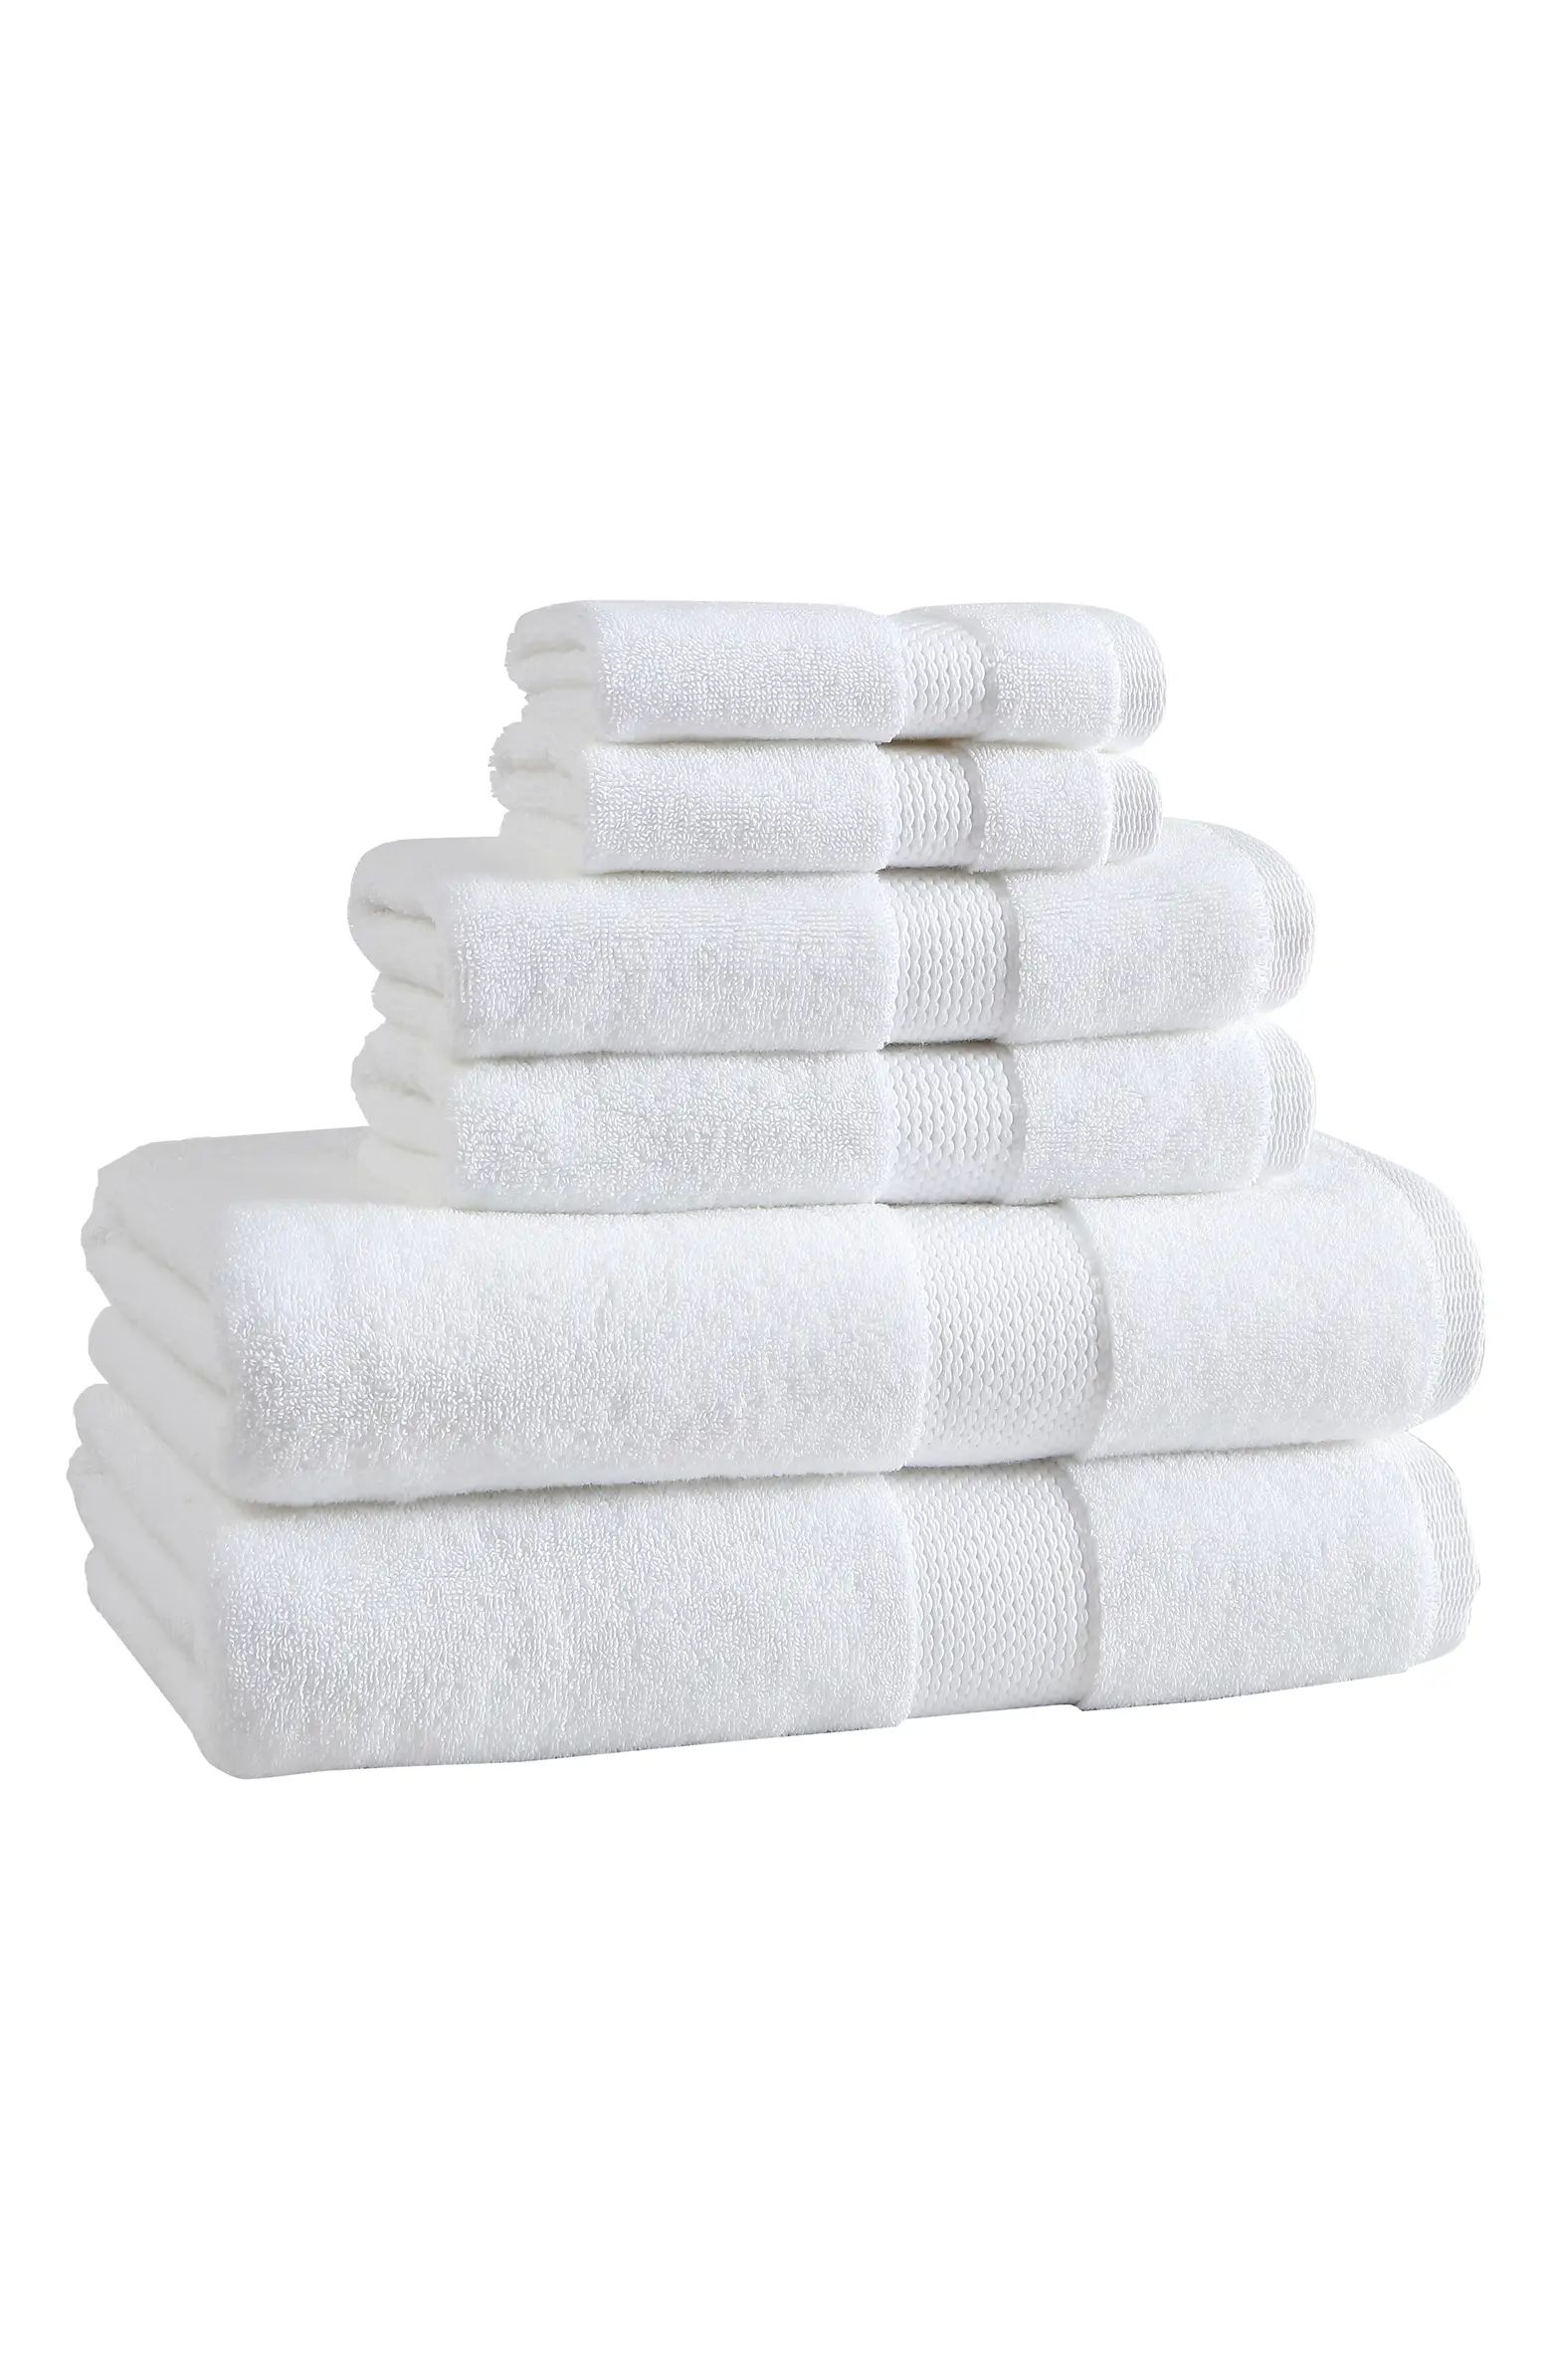 Basel 6-Piece Towel Set | Nordstrom